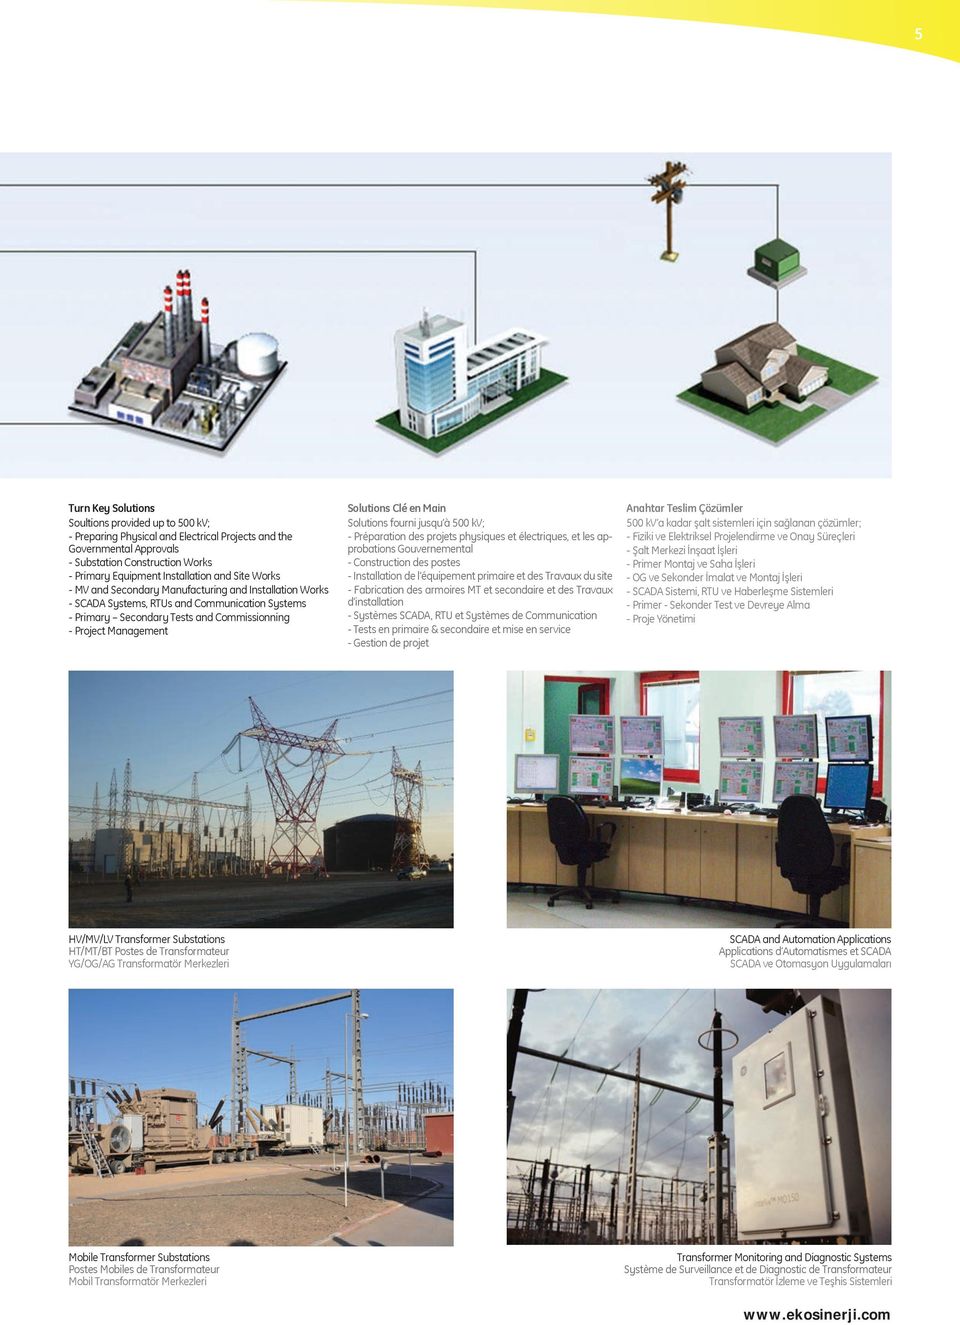 Main Solutions fourni jusqu à 500 kv; - Préparation des projets physiques et électriques, et les approbations Gouvernemental - Construction des postes - Installation de l équipement primaire et des